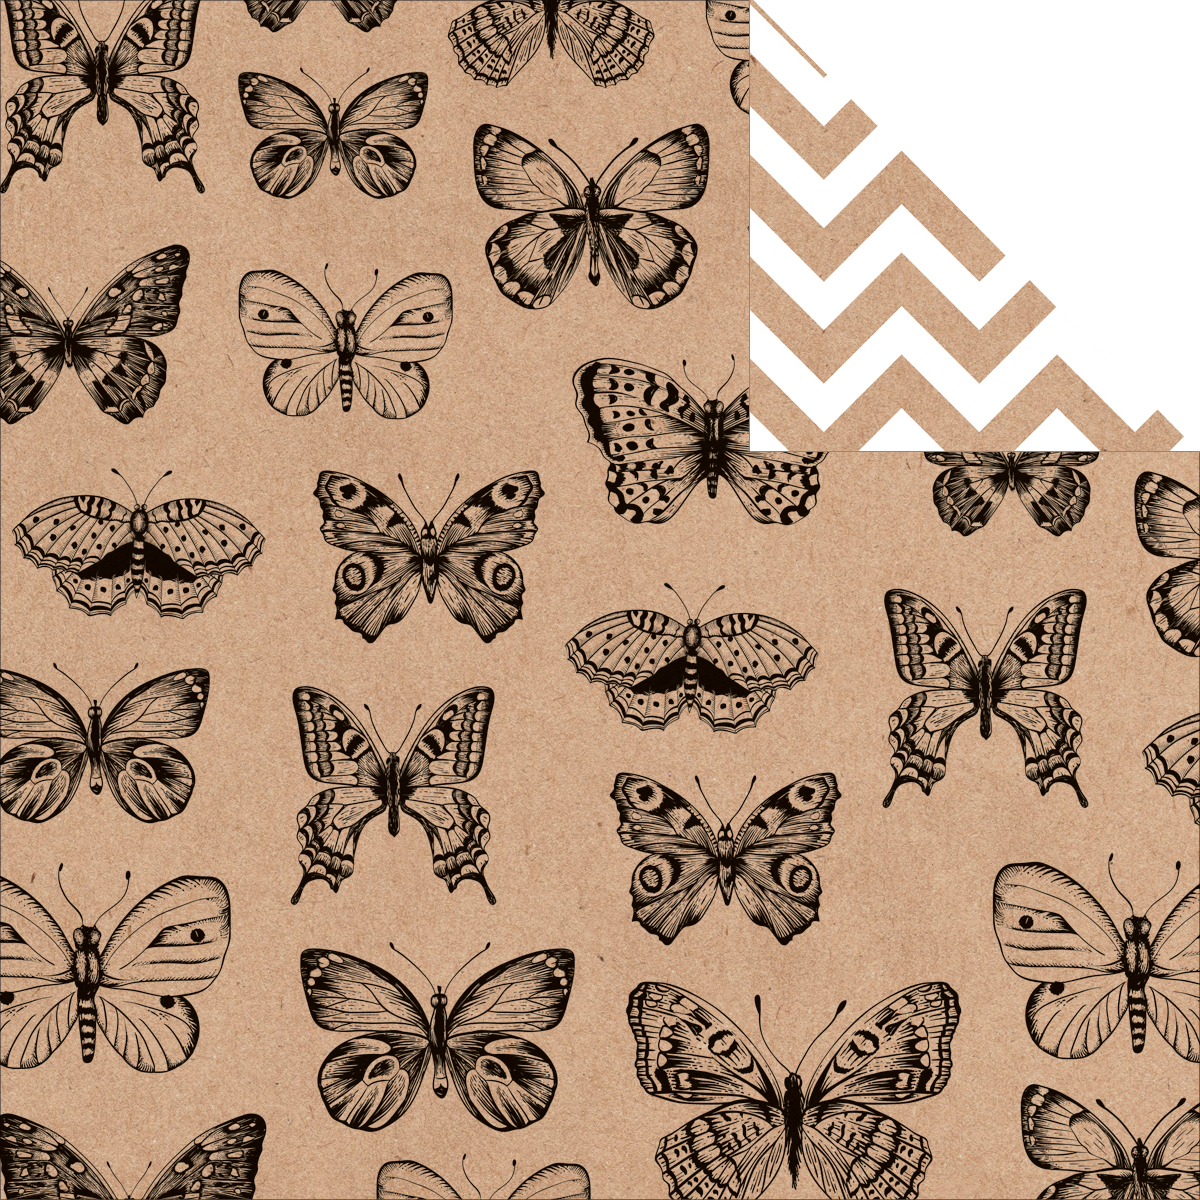 Kaisercraft Butterflies Doppelseitiges Papier Cardstock Mix & Match Collection Scrapbooking Papier  12x12 Inch